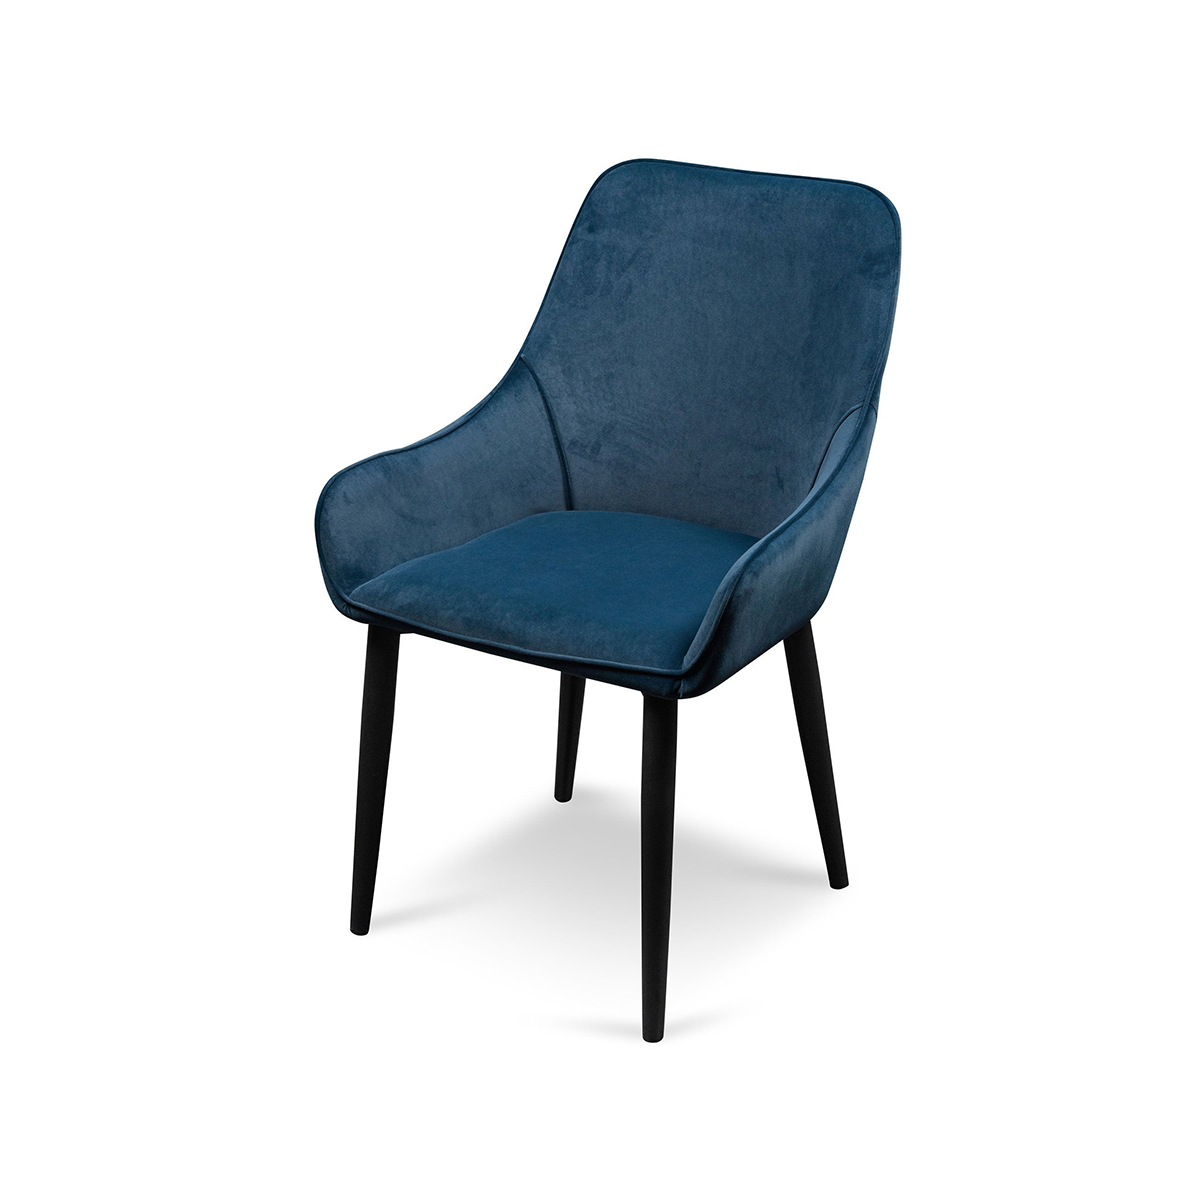 FondHouse Puli Dining Chair - Navy Blue Velvet in Black Legs